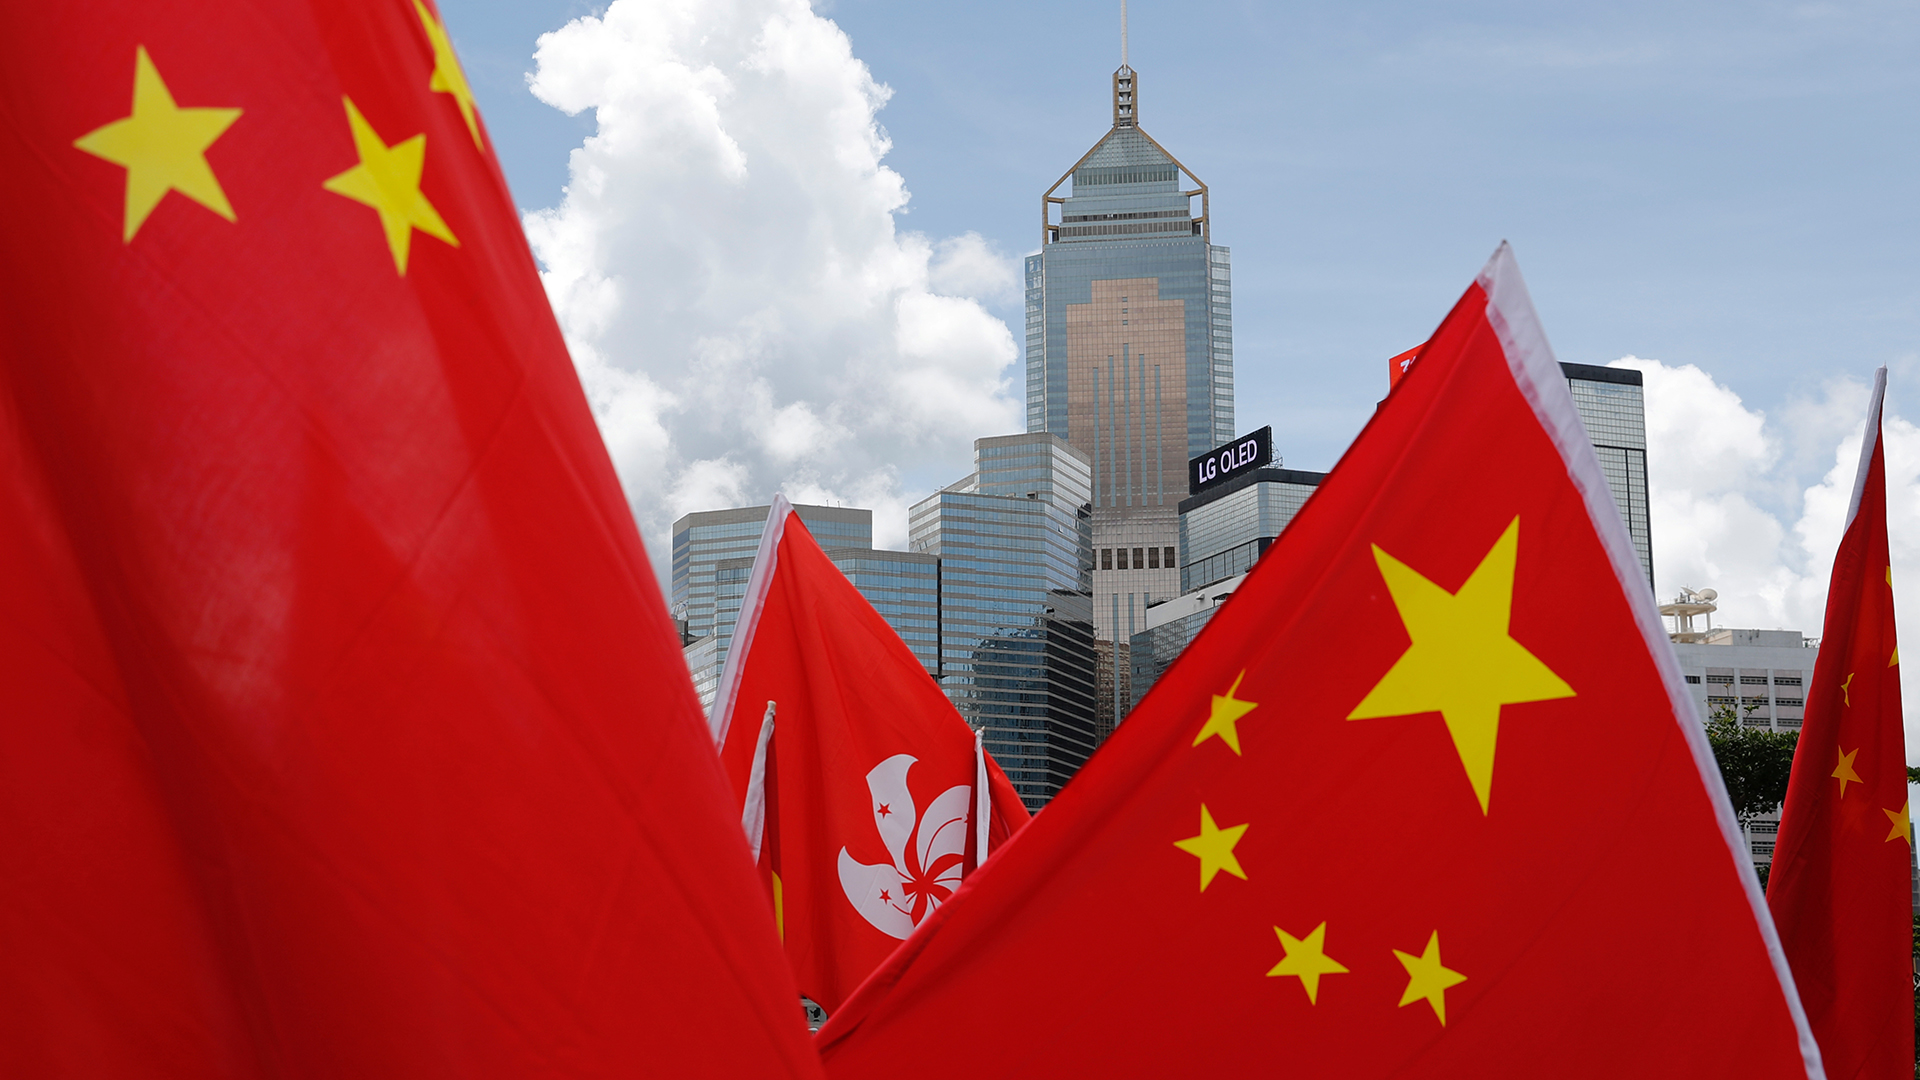 Flaggen der Volksrepublik China wehen vor der Skyline von Hongkong